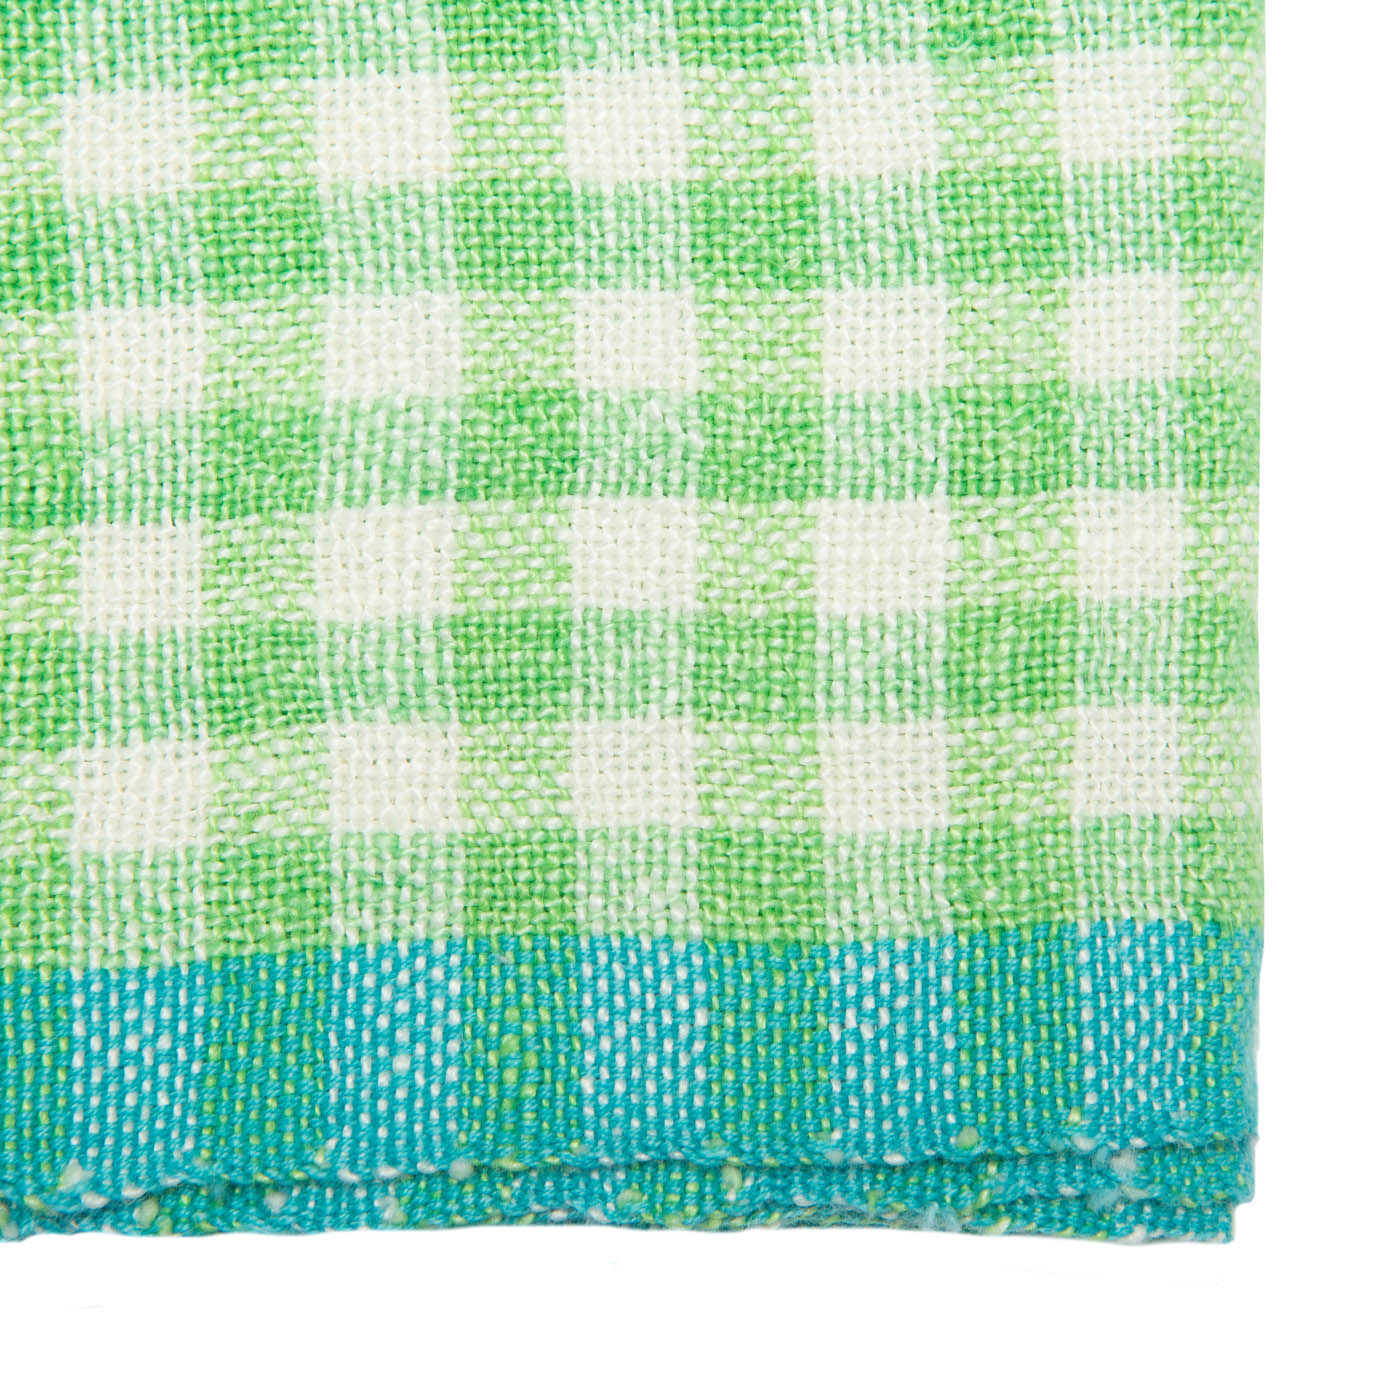 Caravan Gingham Towels - Set of 2 - Lime/Aqua